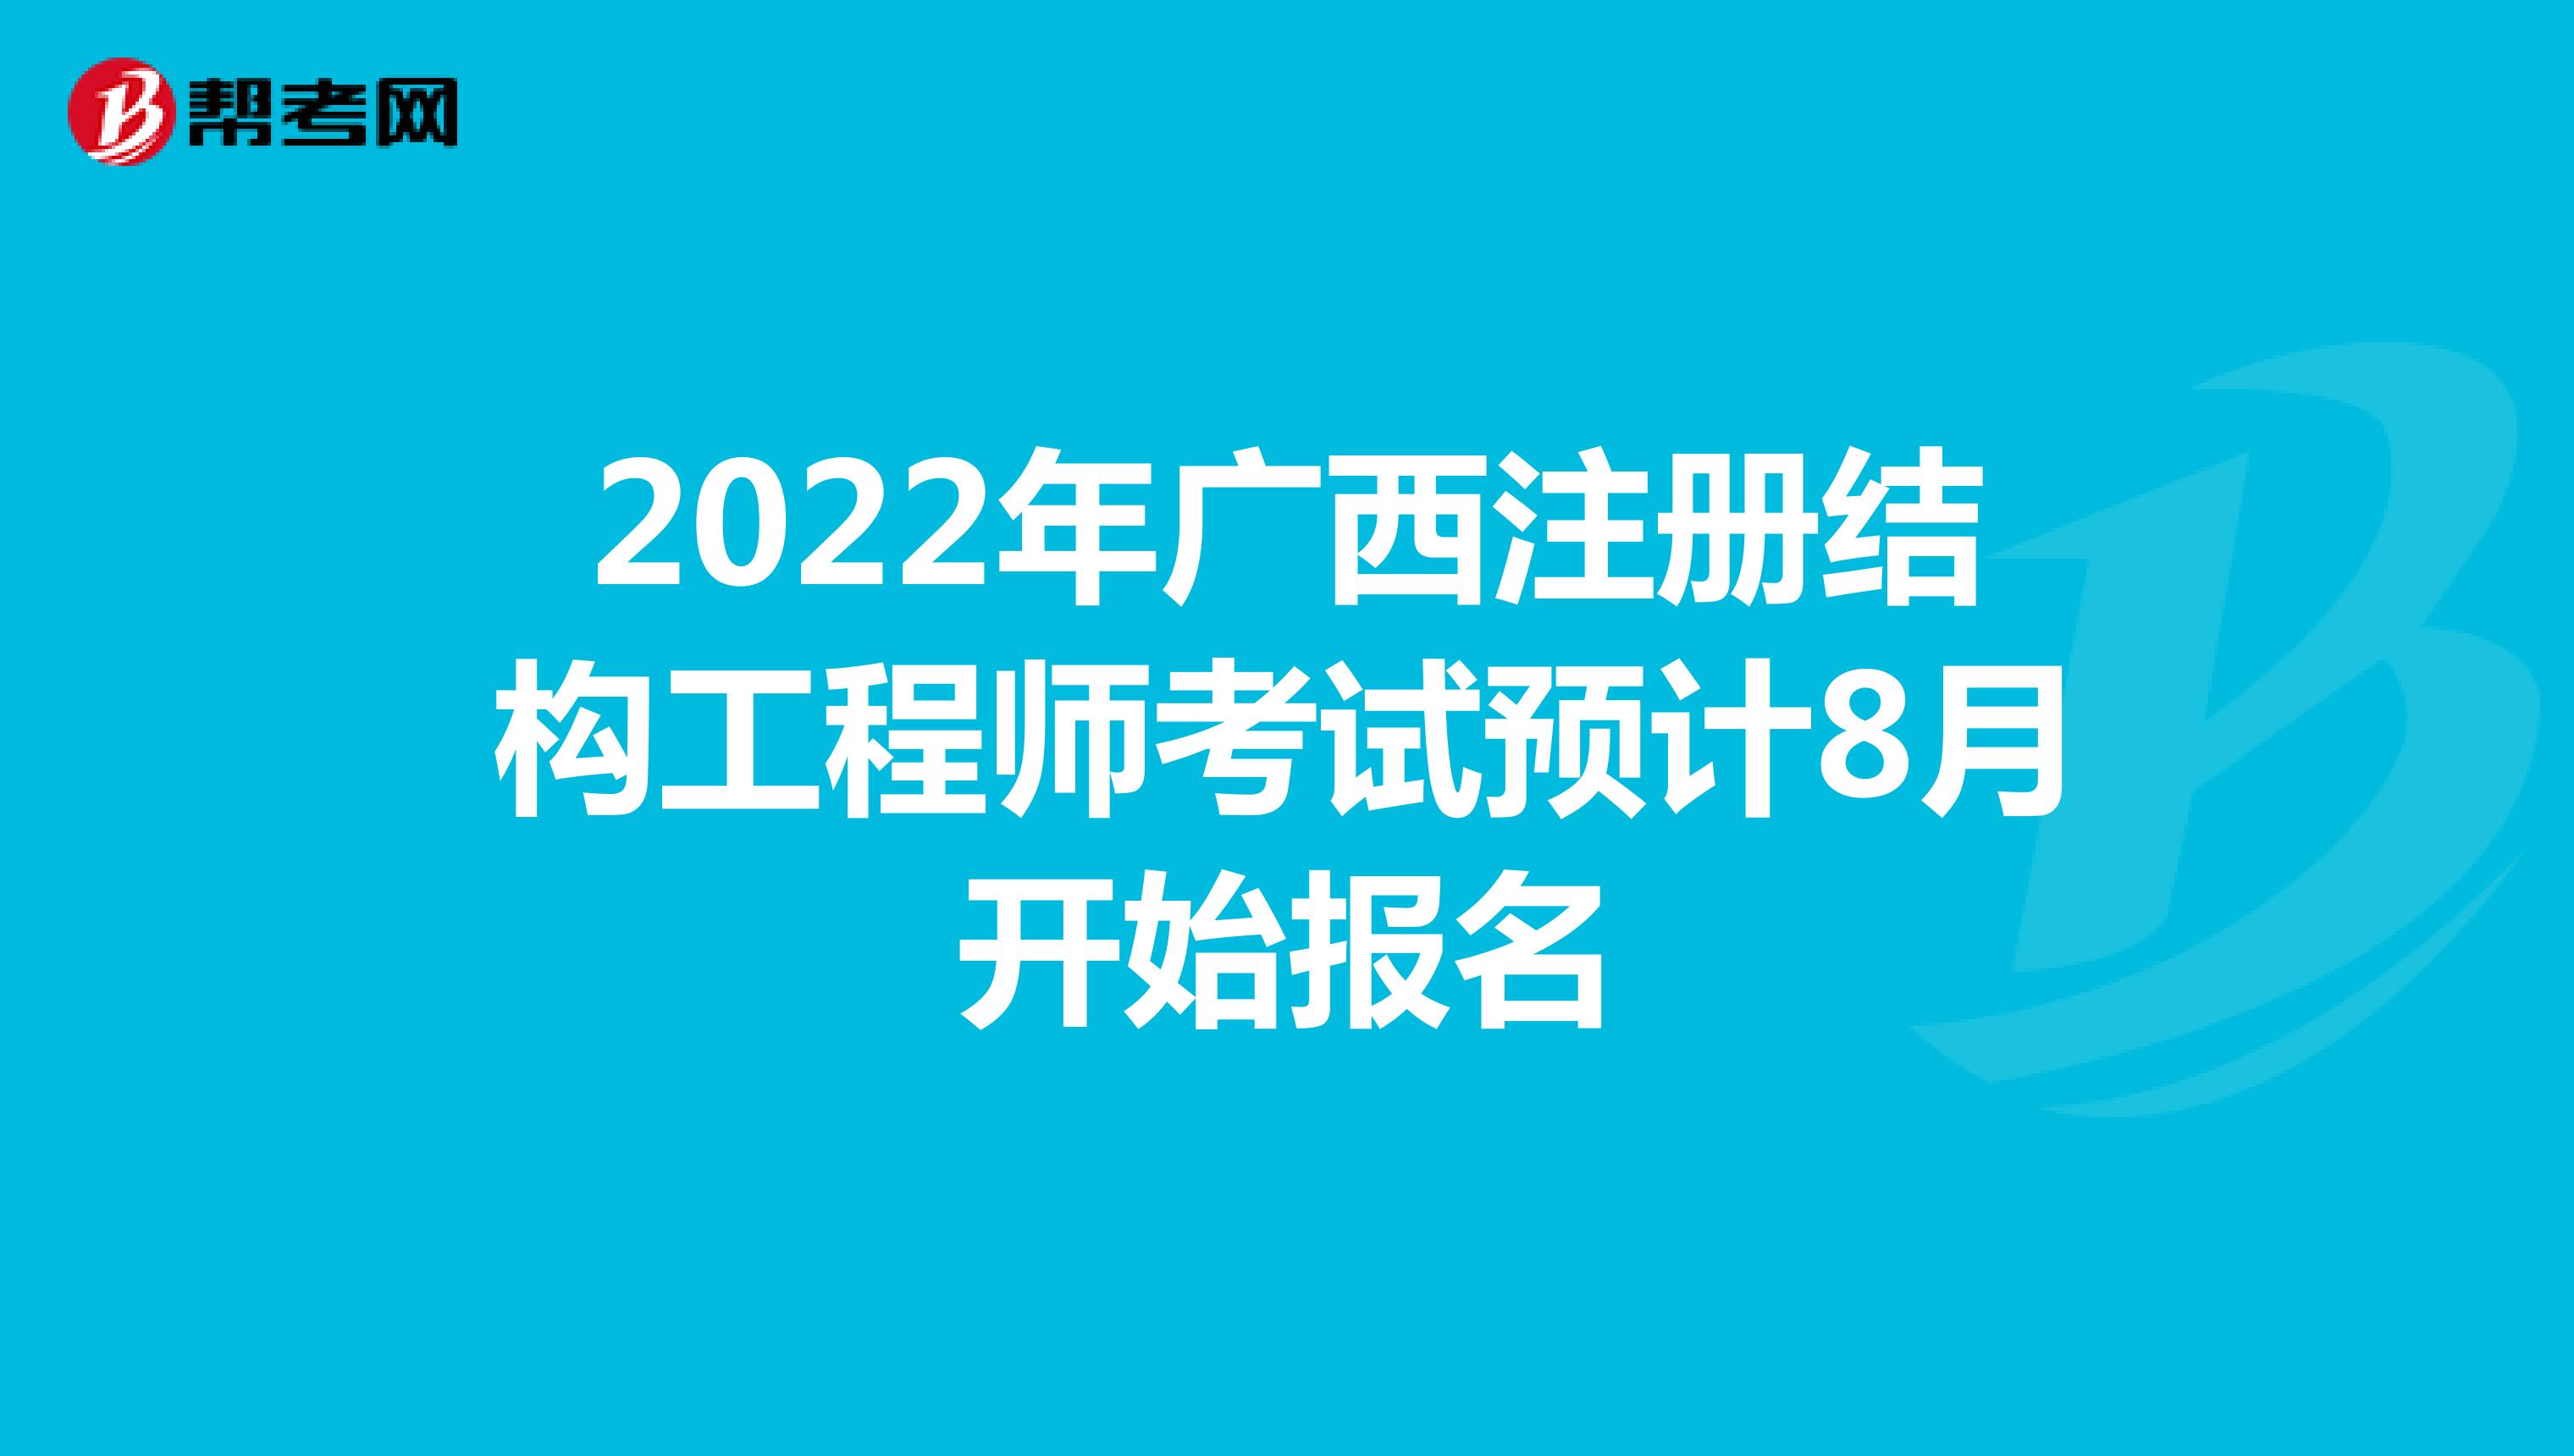 2022年广西注册结构工程师考试预计8月开始报名